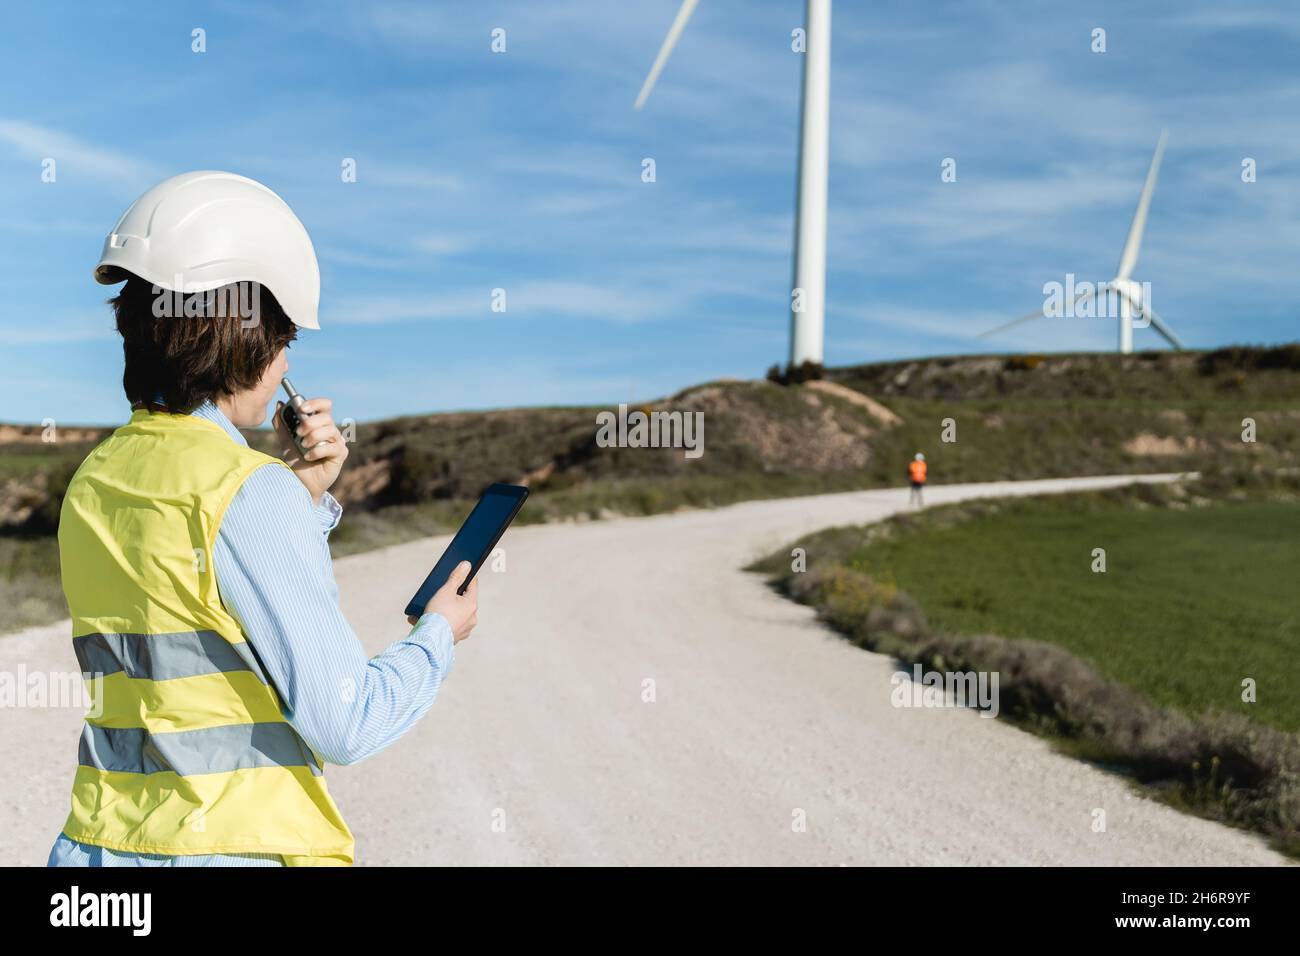 Menschen, die in einem grünen alternativen Energiepark mit Windturbinengeneratoren im Hintergrund arbeiten - Fokus auf Frau zurück Stockfoto